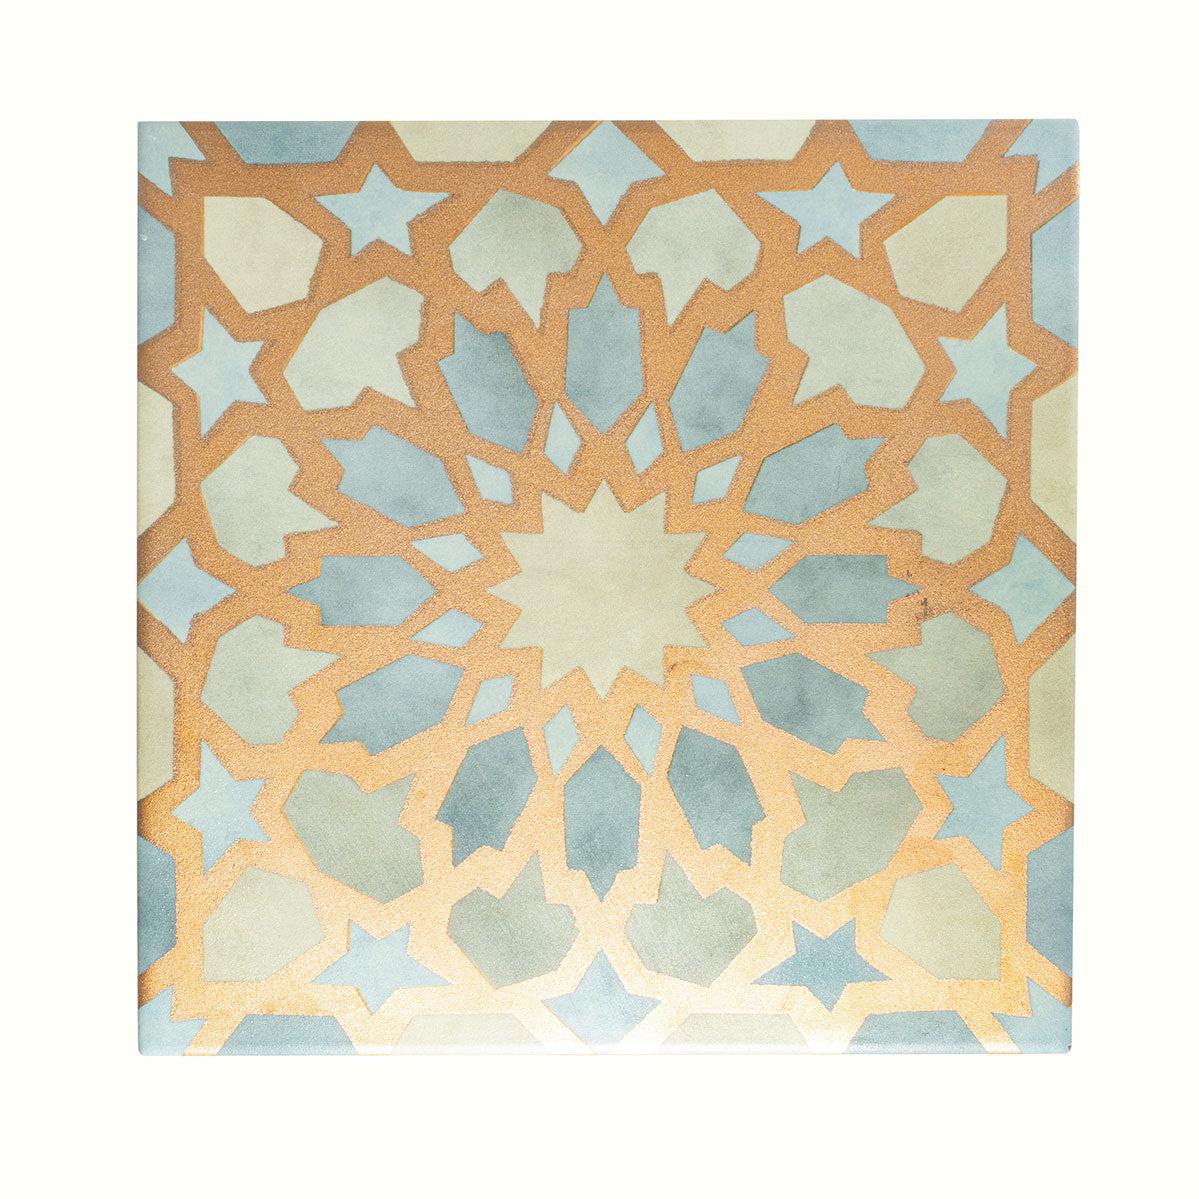 Amira Regal Green and Gold Patterned Porcelain Tile